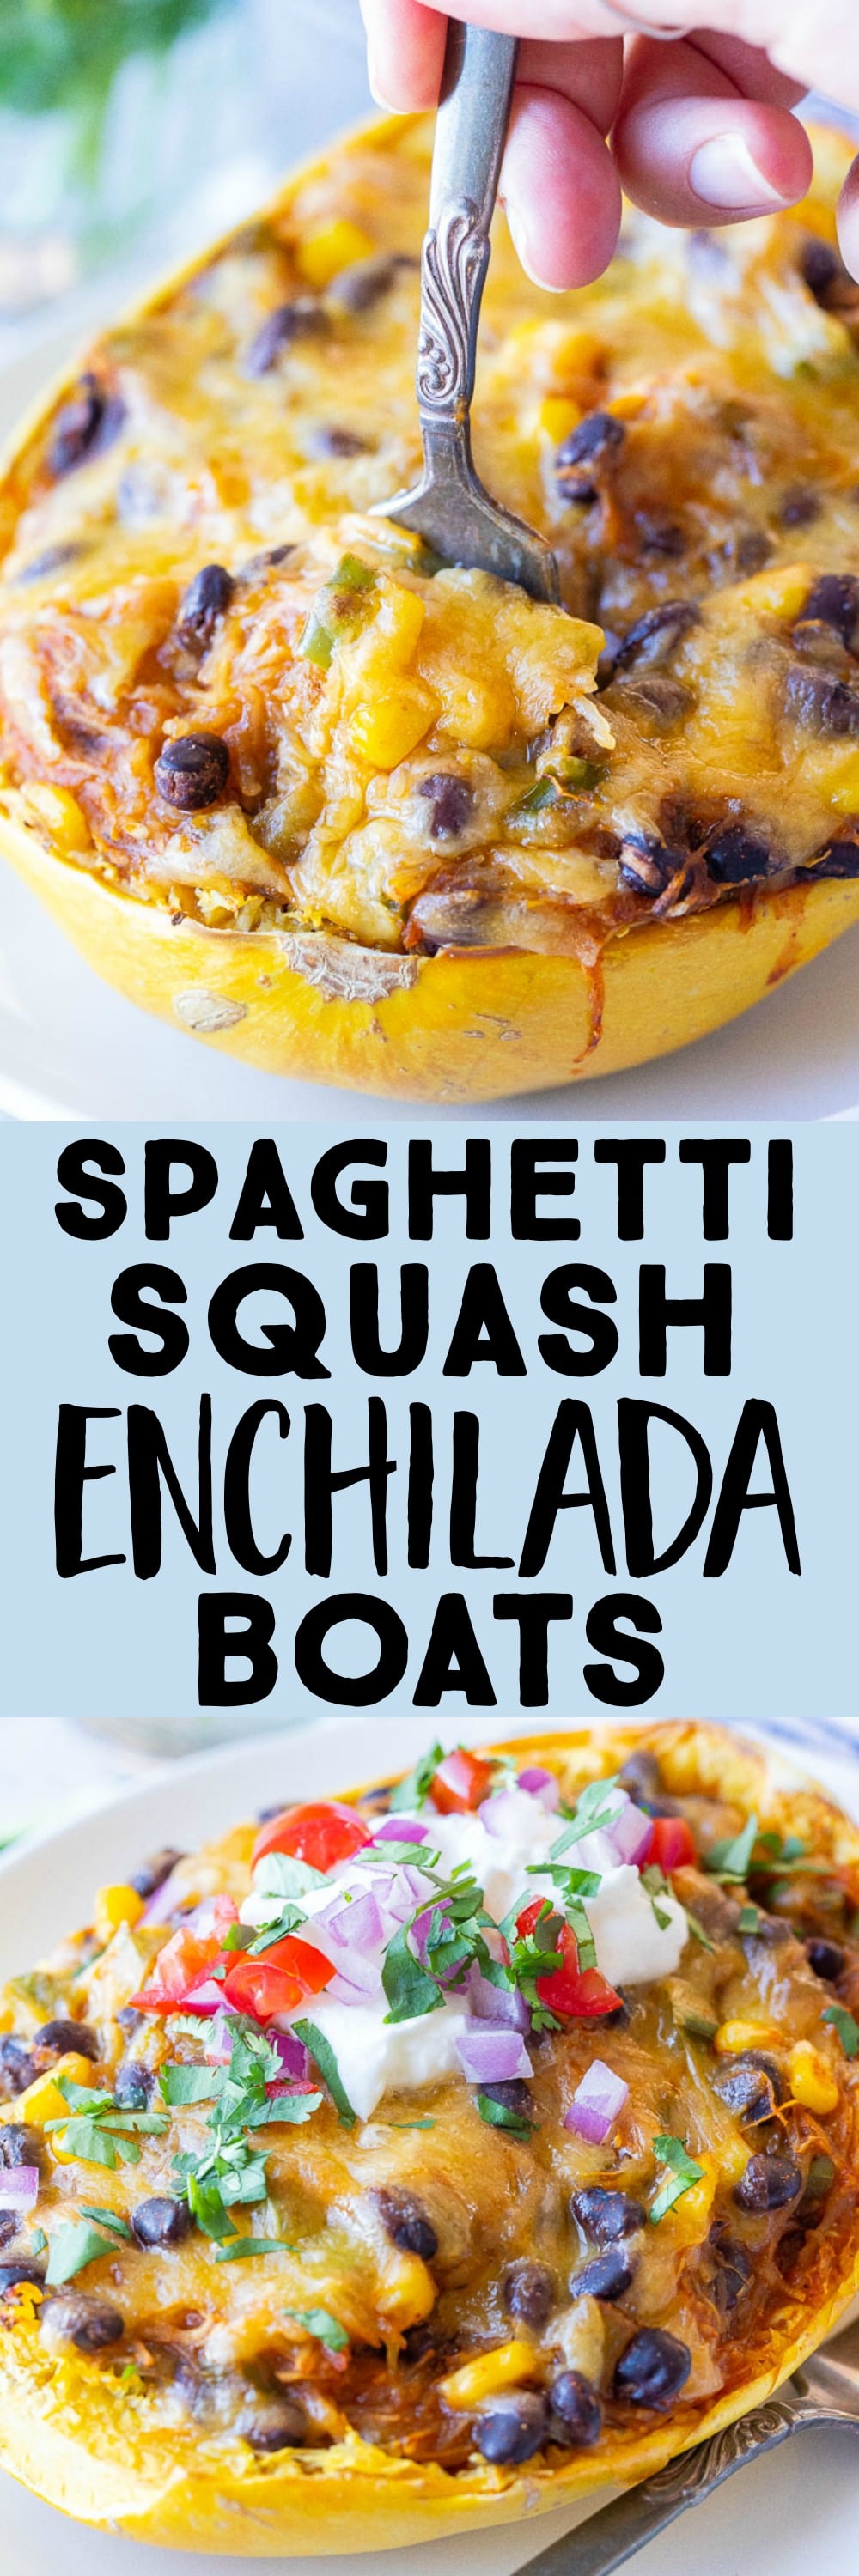 Spaghetti Squash Enchilada Boats - She Likes Food